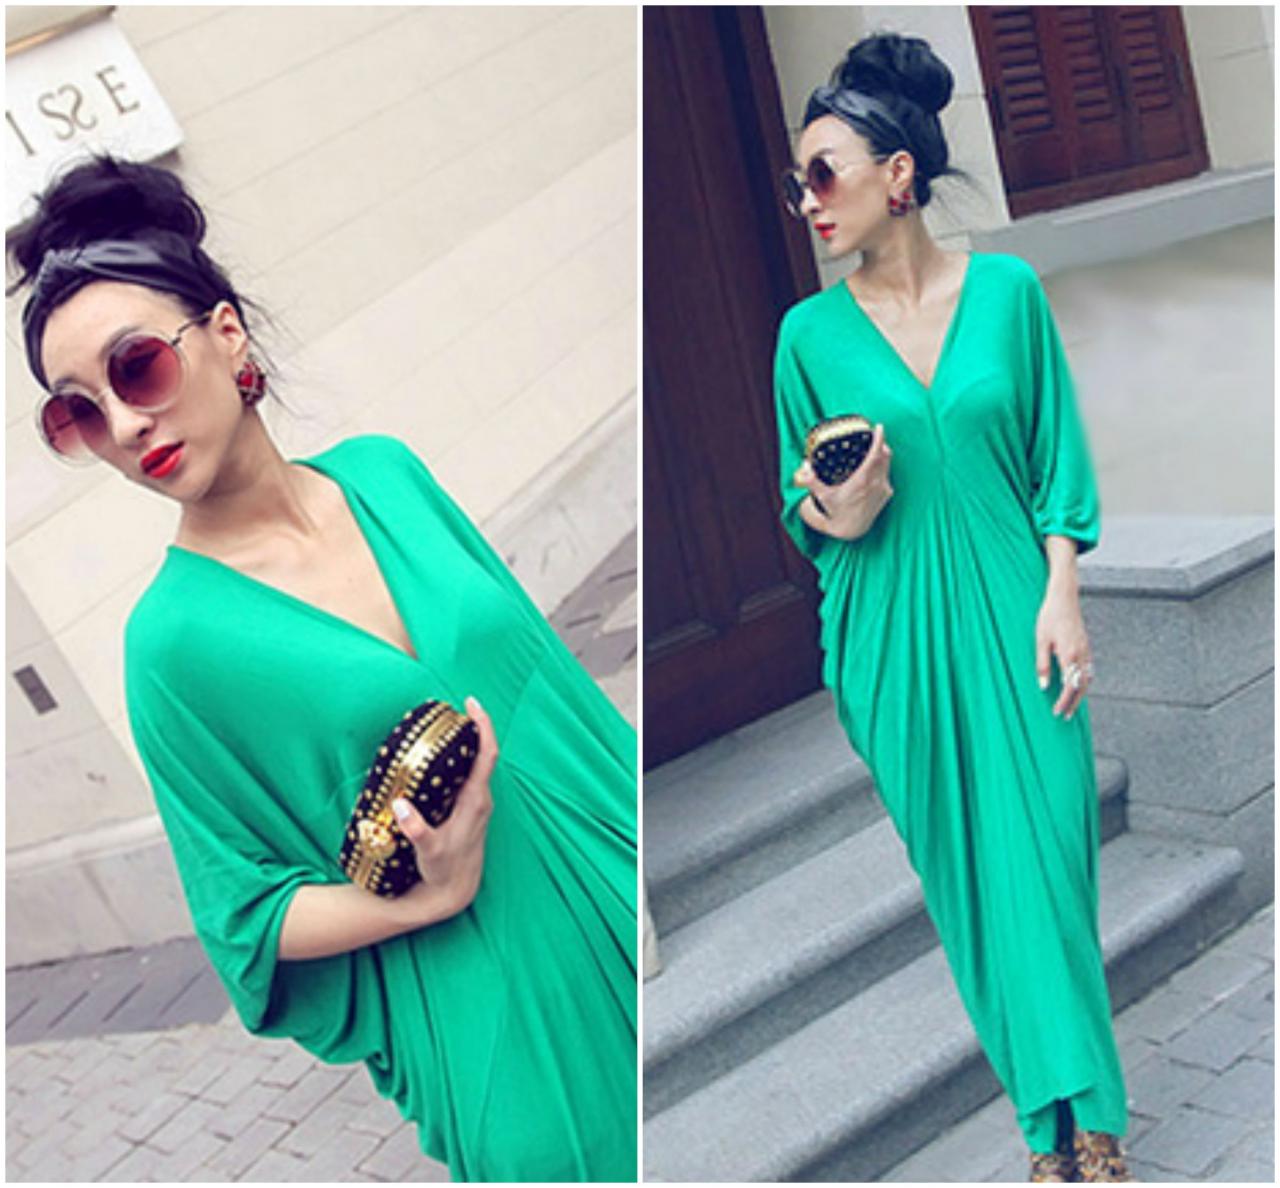 Green Bohemian Long Sleeve Maxi Dress